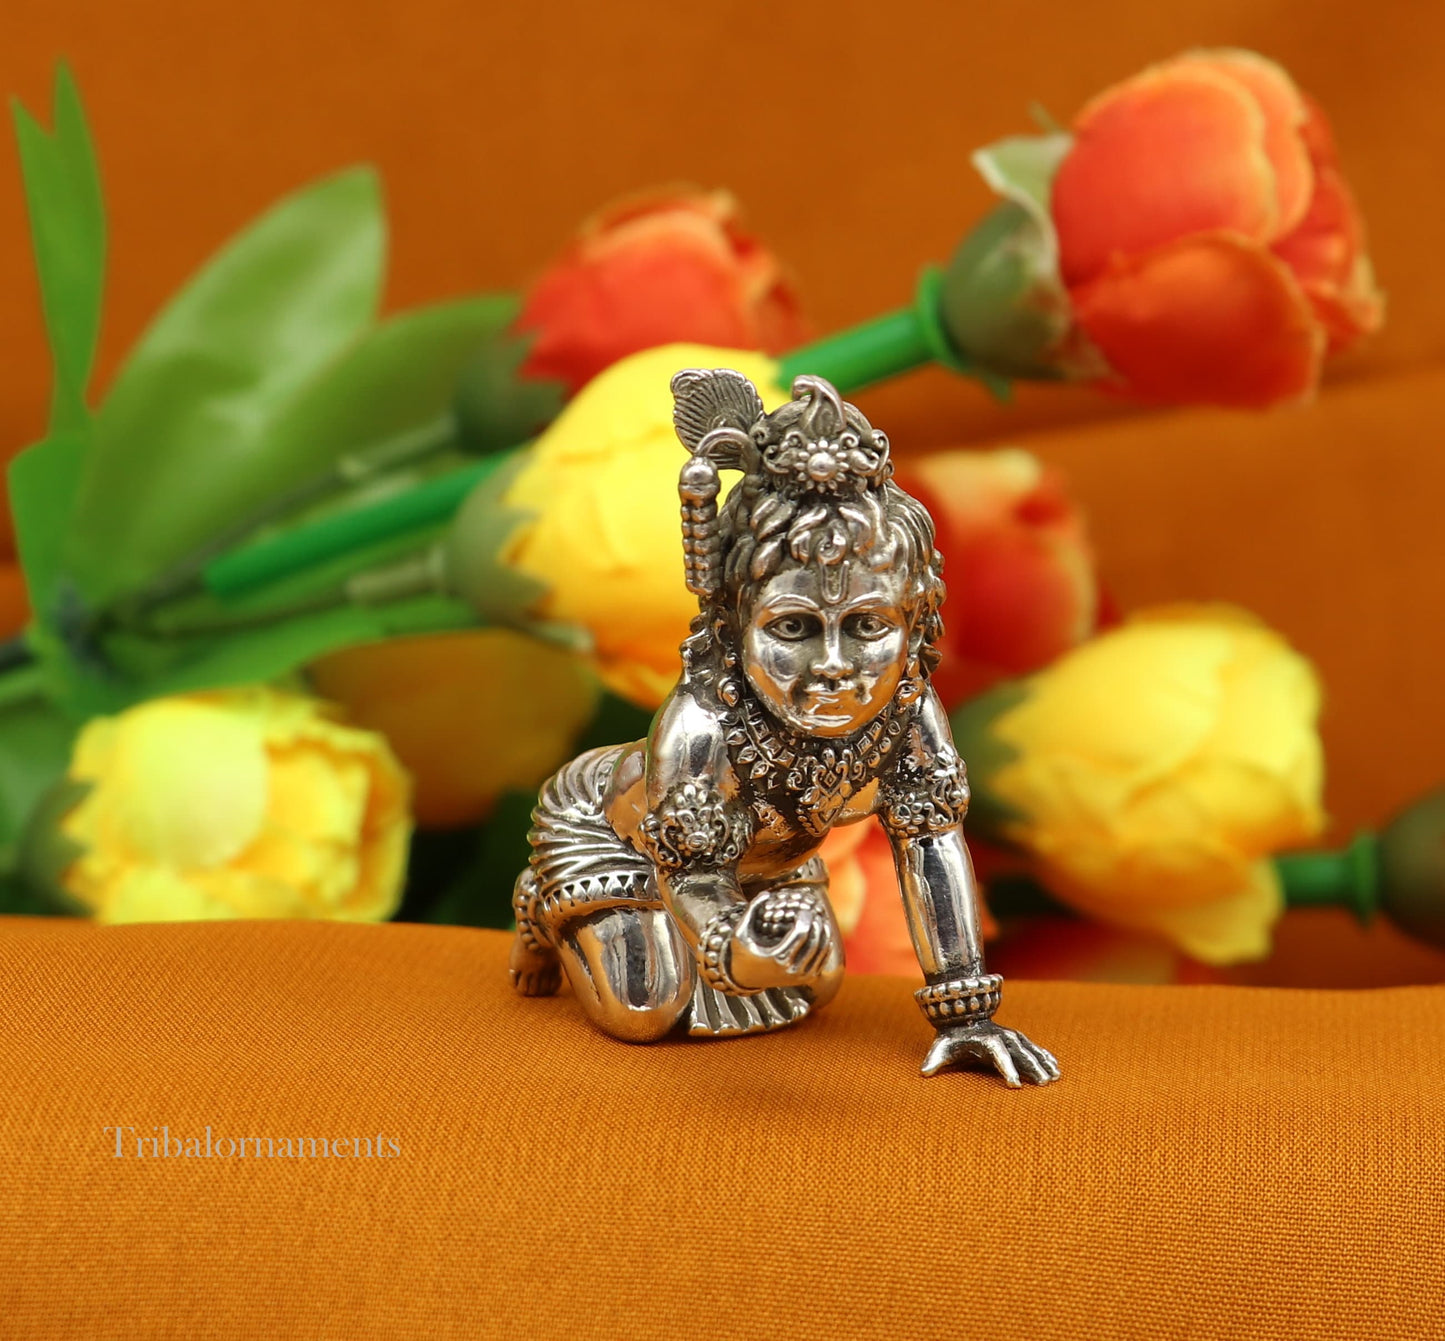 2" 925 silver handmade idol god little Krishna, Laddu Gopal, crawling Krishna small statue sculpture temple puja art, Diwali gift art231 - TRIBAL ORNAMENTS